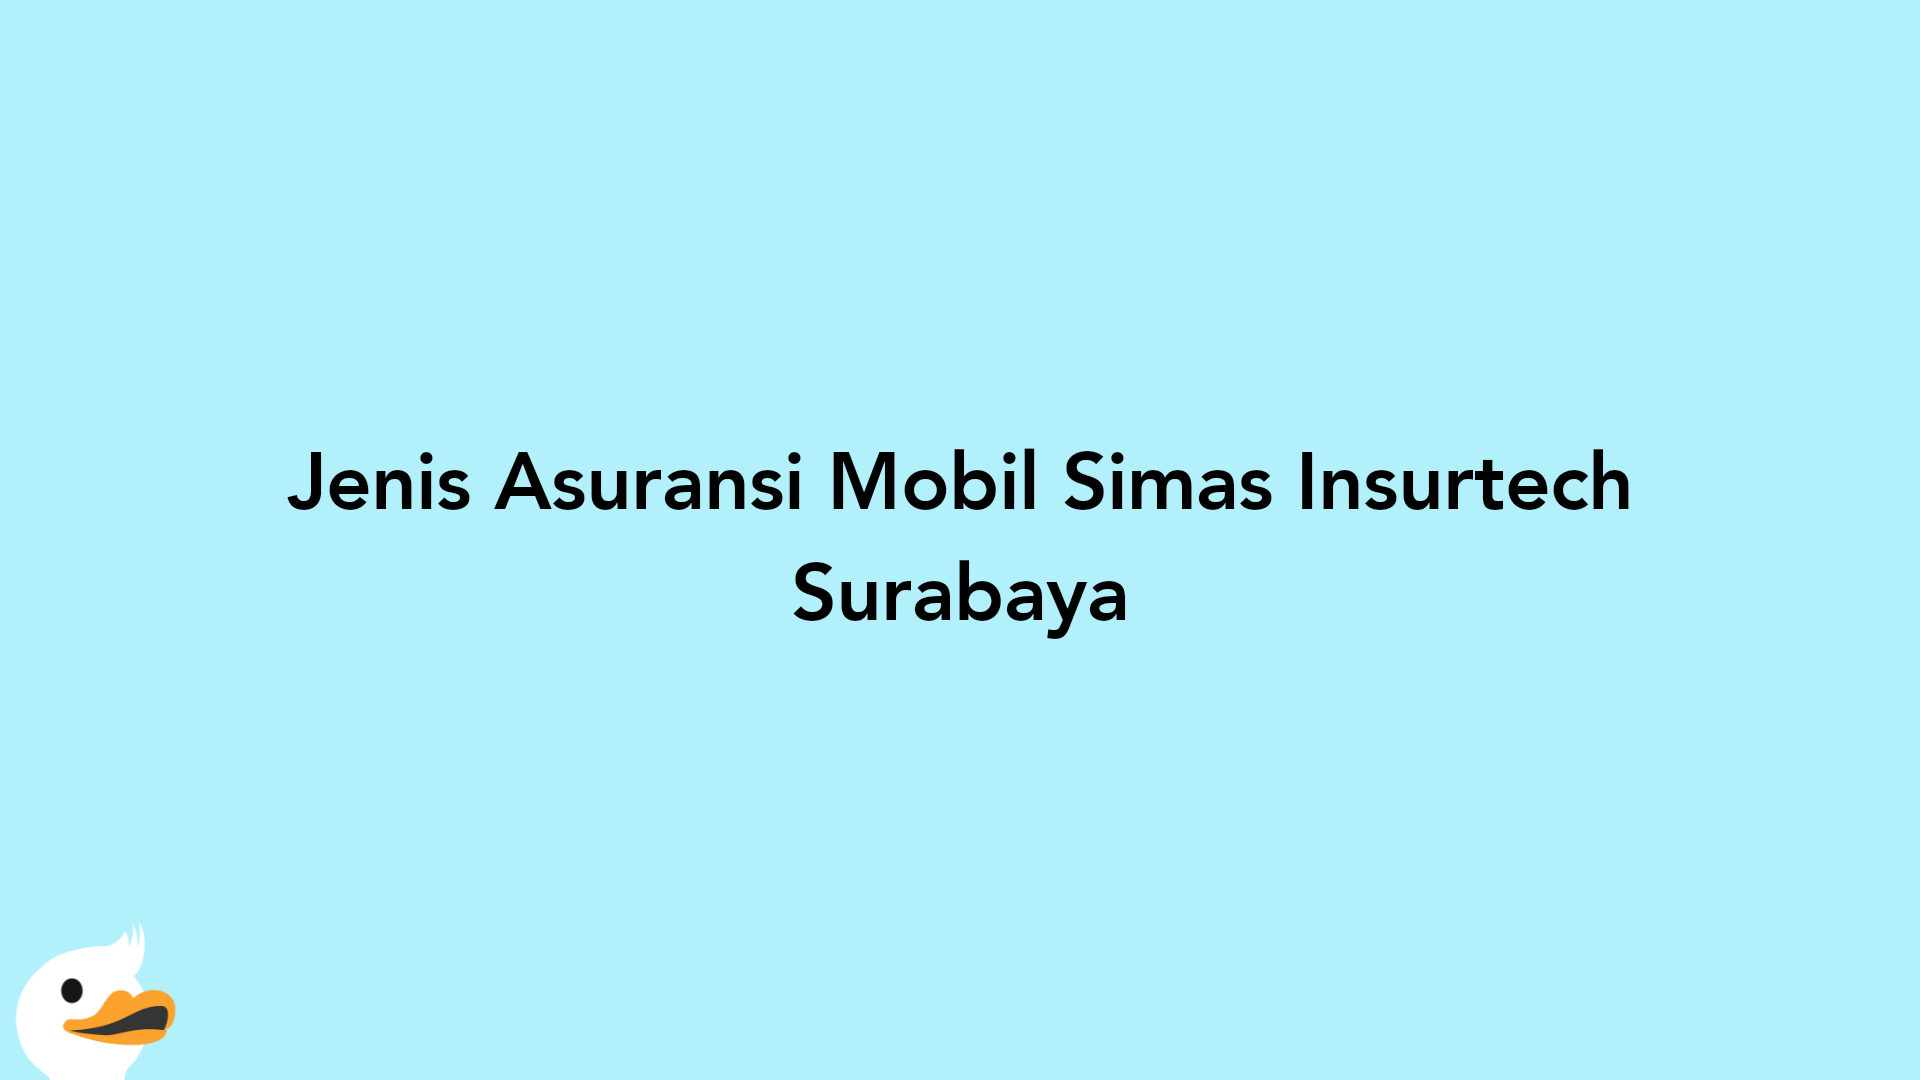 Jenis Asuransi Mobil Simas Insurtech Surabaya